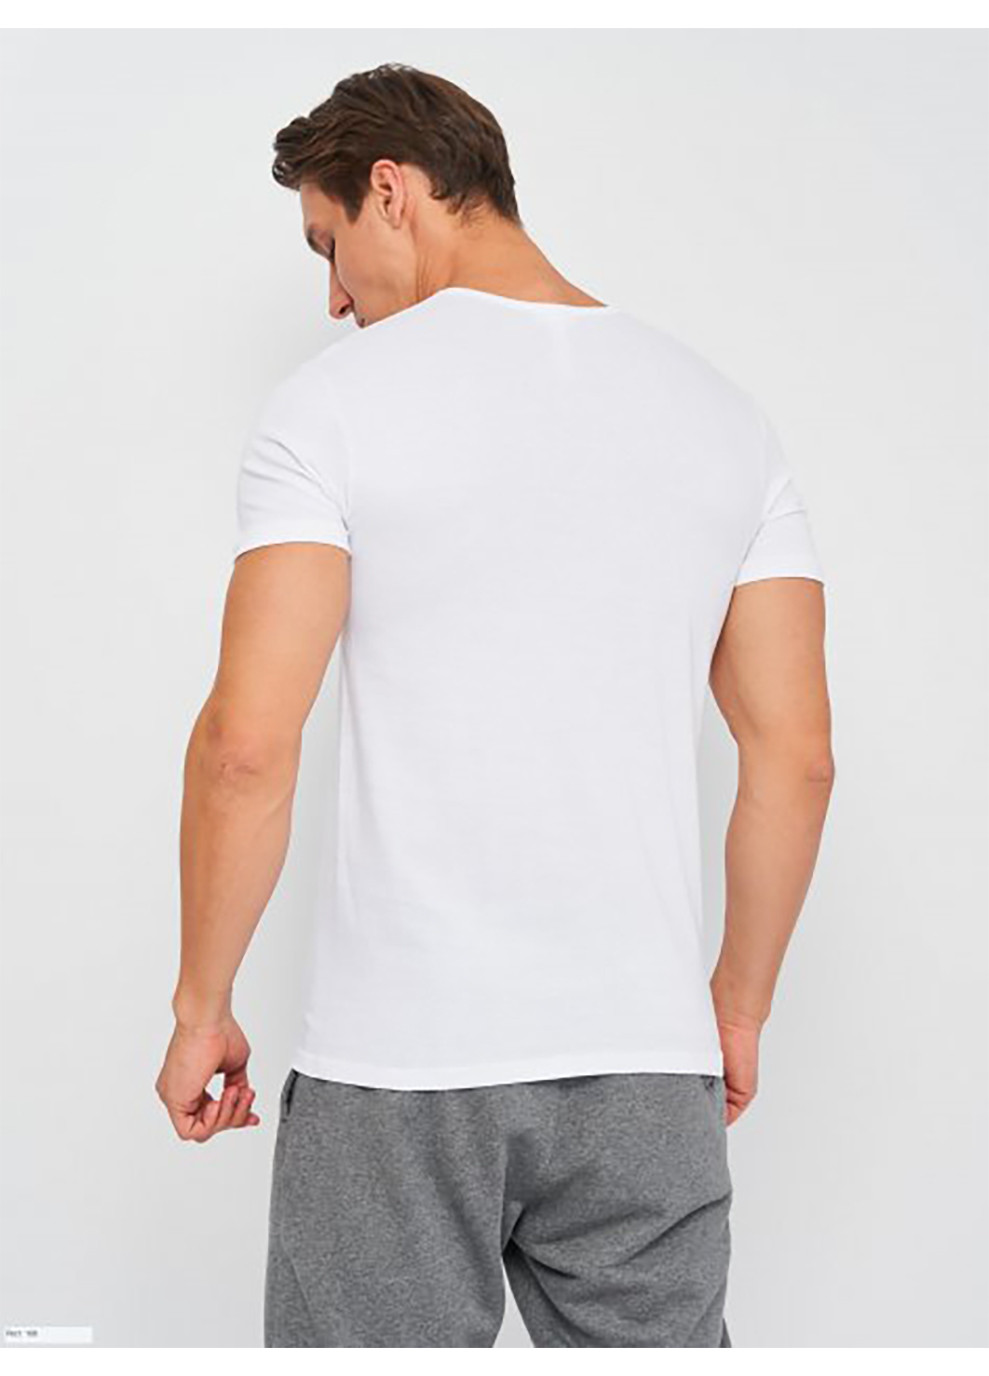 Біла футболка t-shirt mezza manica scollo v білий 2xl чоловік k1315 bianco-2xl Kappa